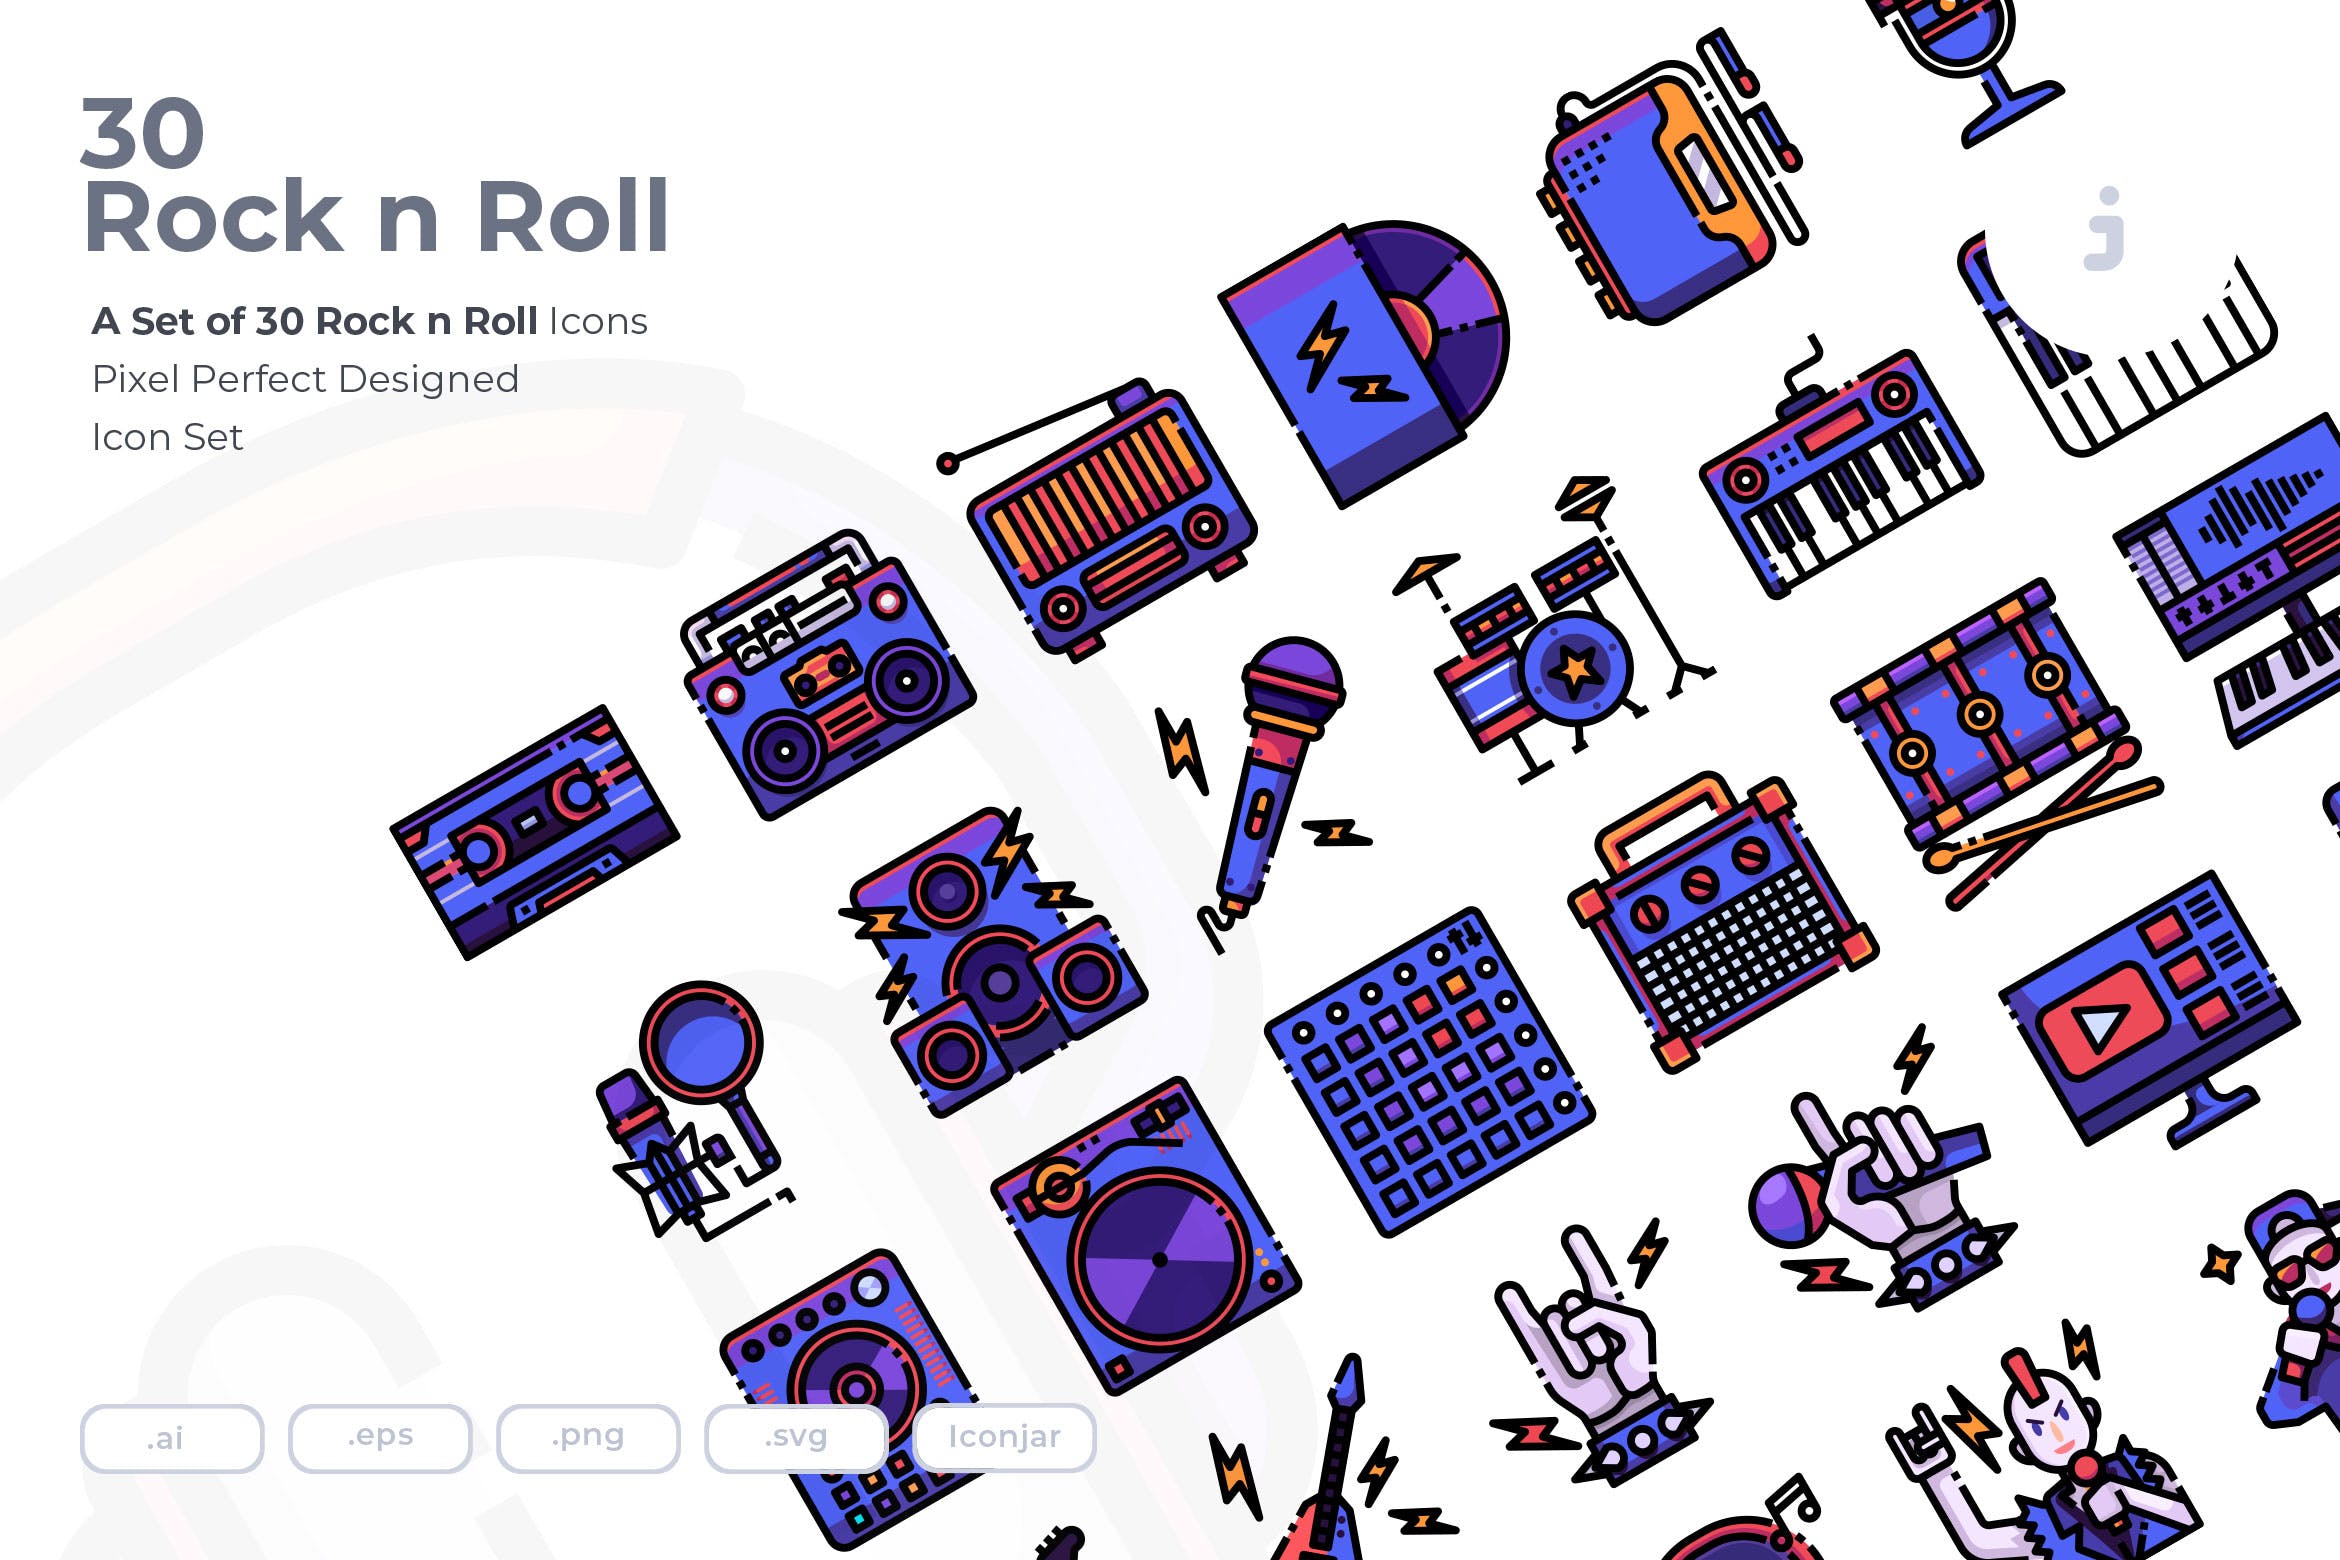 30枚摇滚音乐矢量图标素材 30 Rock n Roll Icons插图